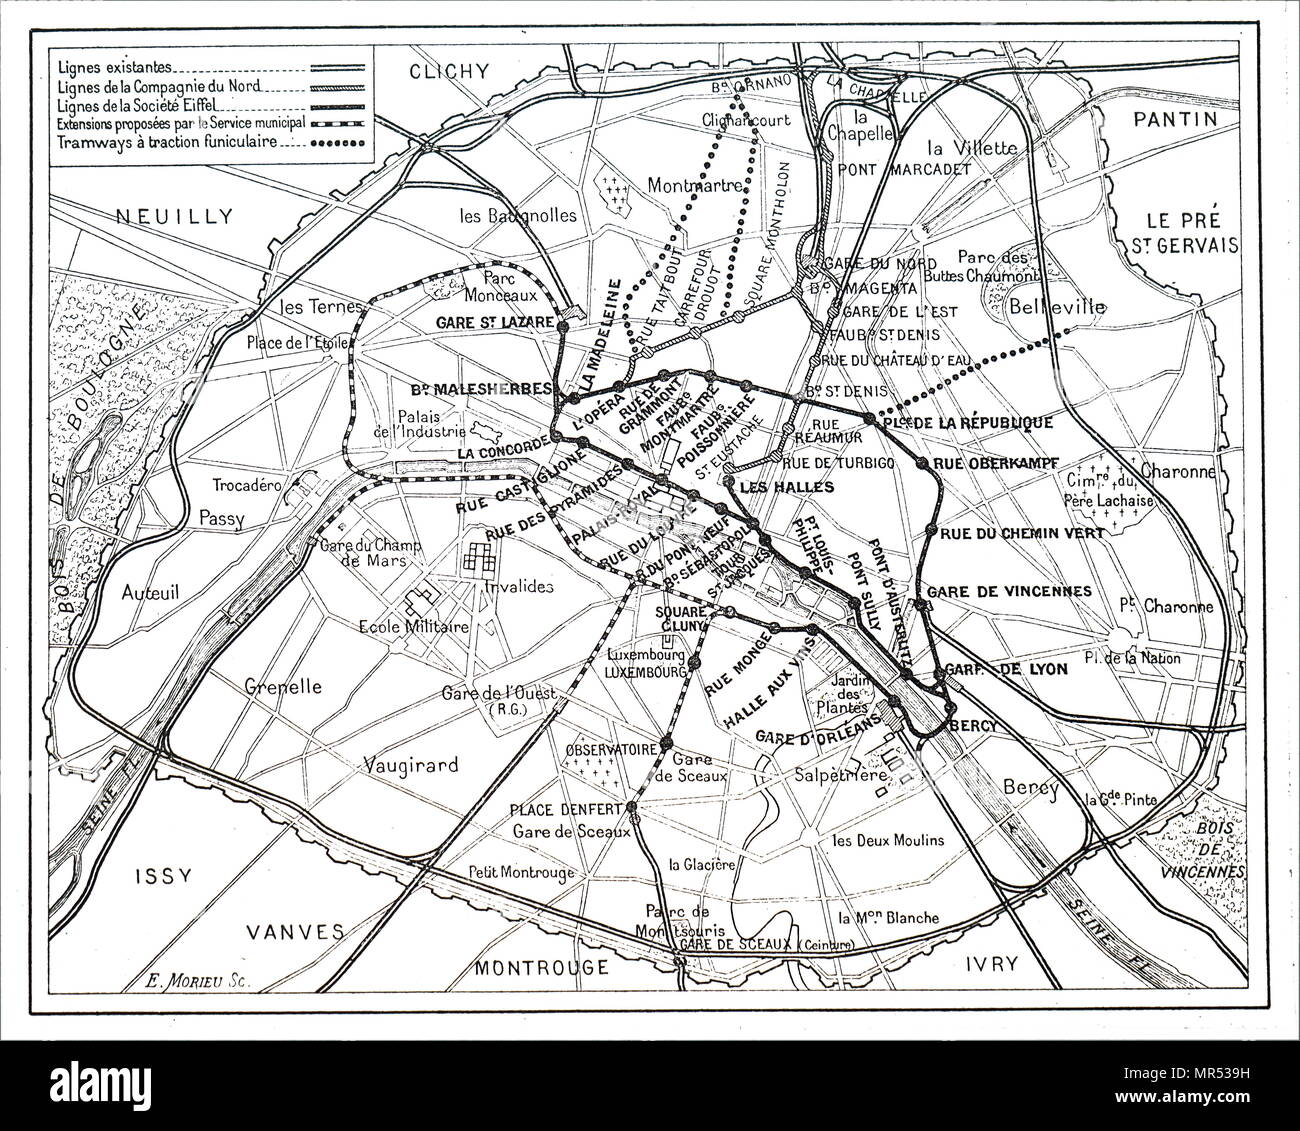 Mapa que ilustra la situación actual y propone líneas del Metro de París. Fecha del siglo XIX Foto de stock